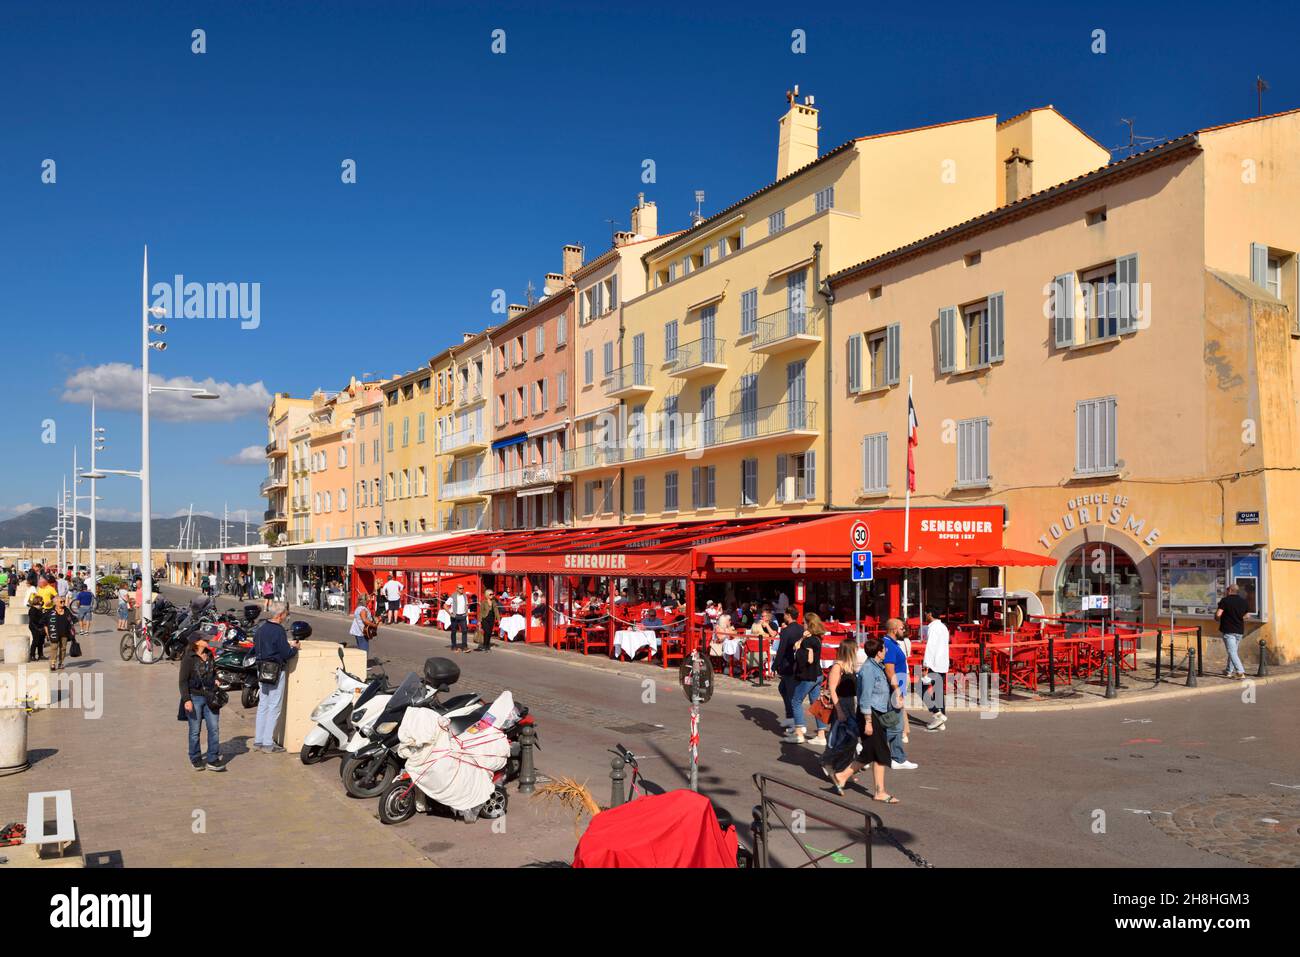 France, Var, Saint Tropez, quai Jean Jaures, Cafe Senequier founded in 1887 Stock Photo